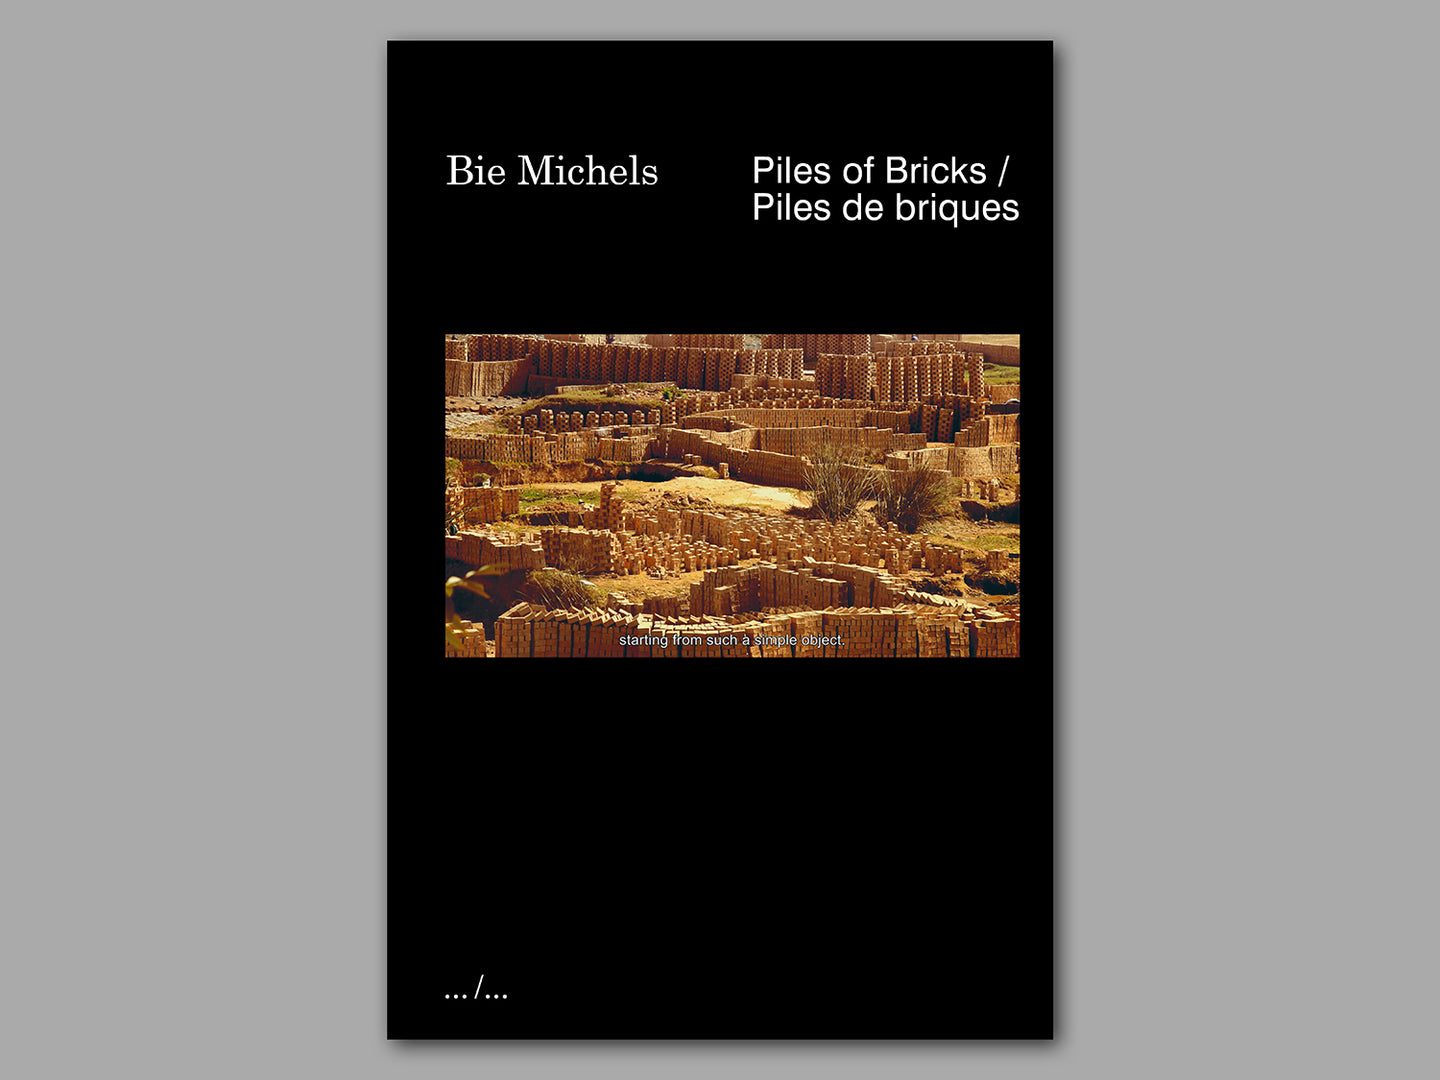 Piles of Bricks by Bie Michels